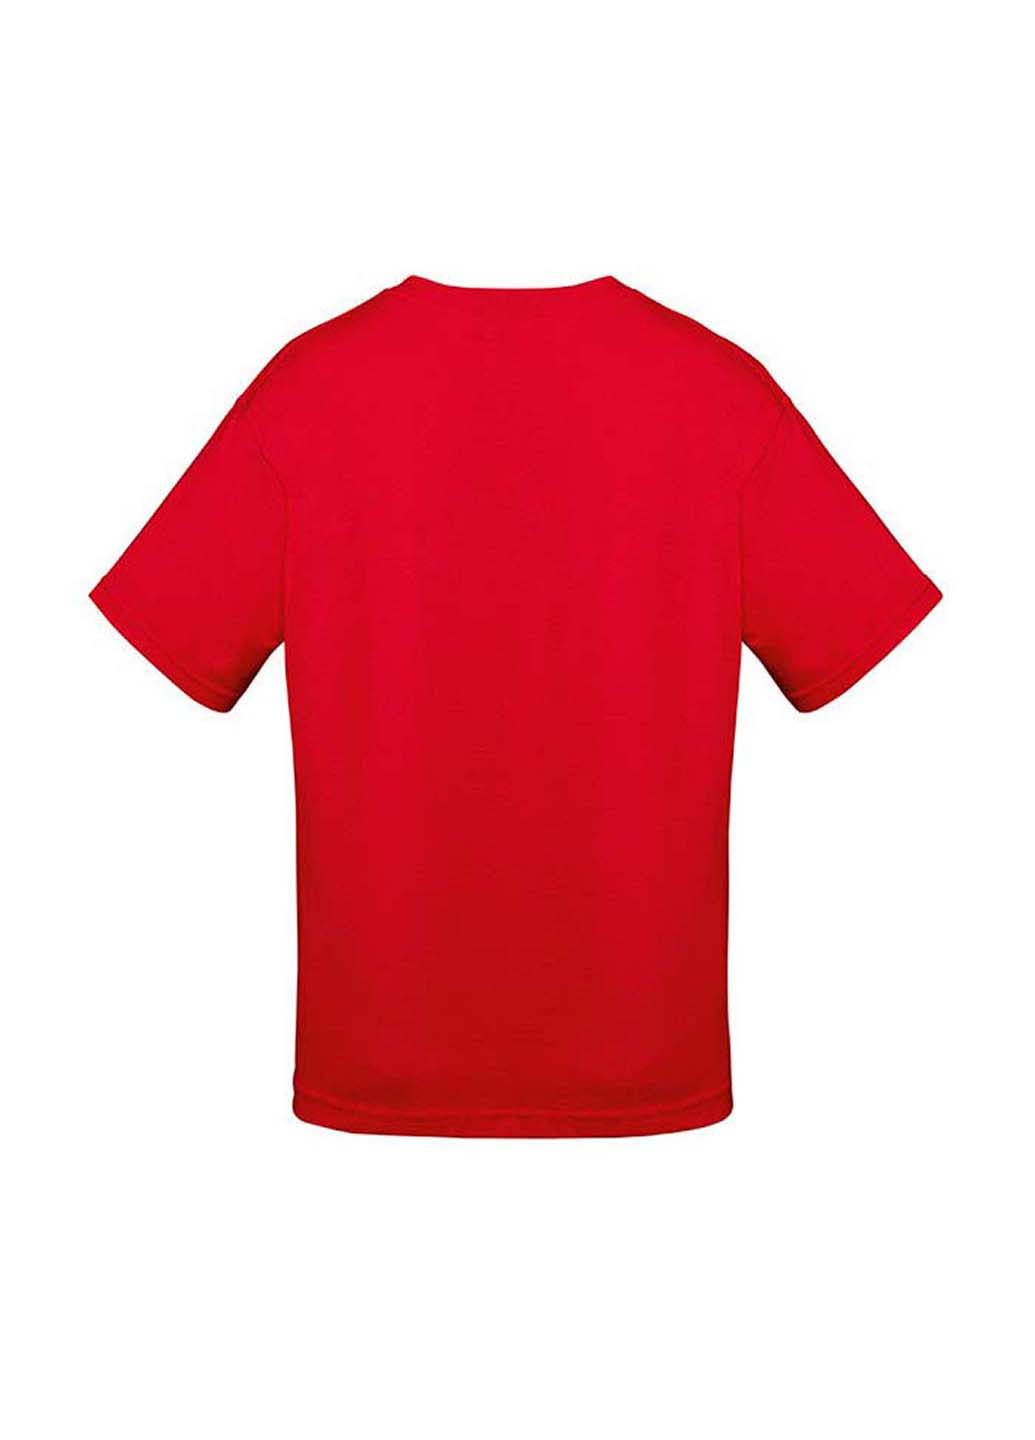 Красная демисезонная футболка Fruit of the Loom 61015040152